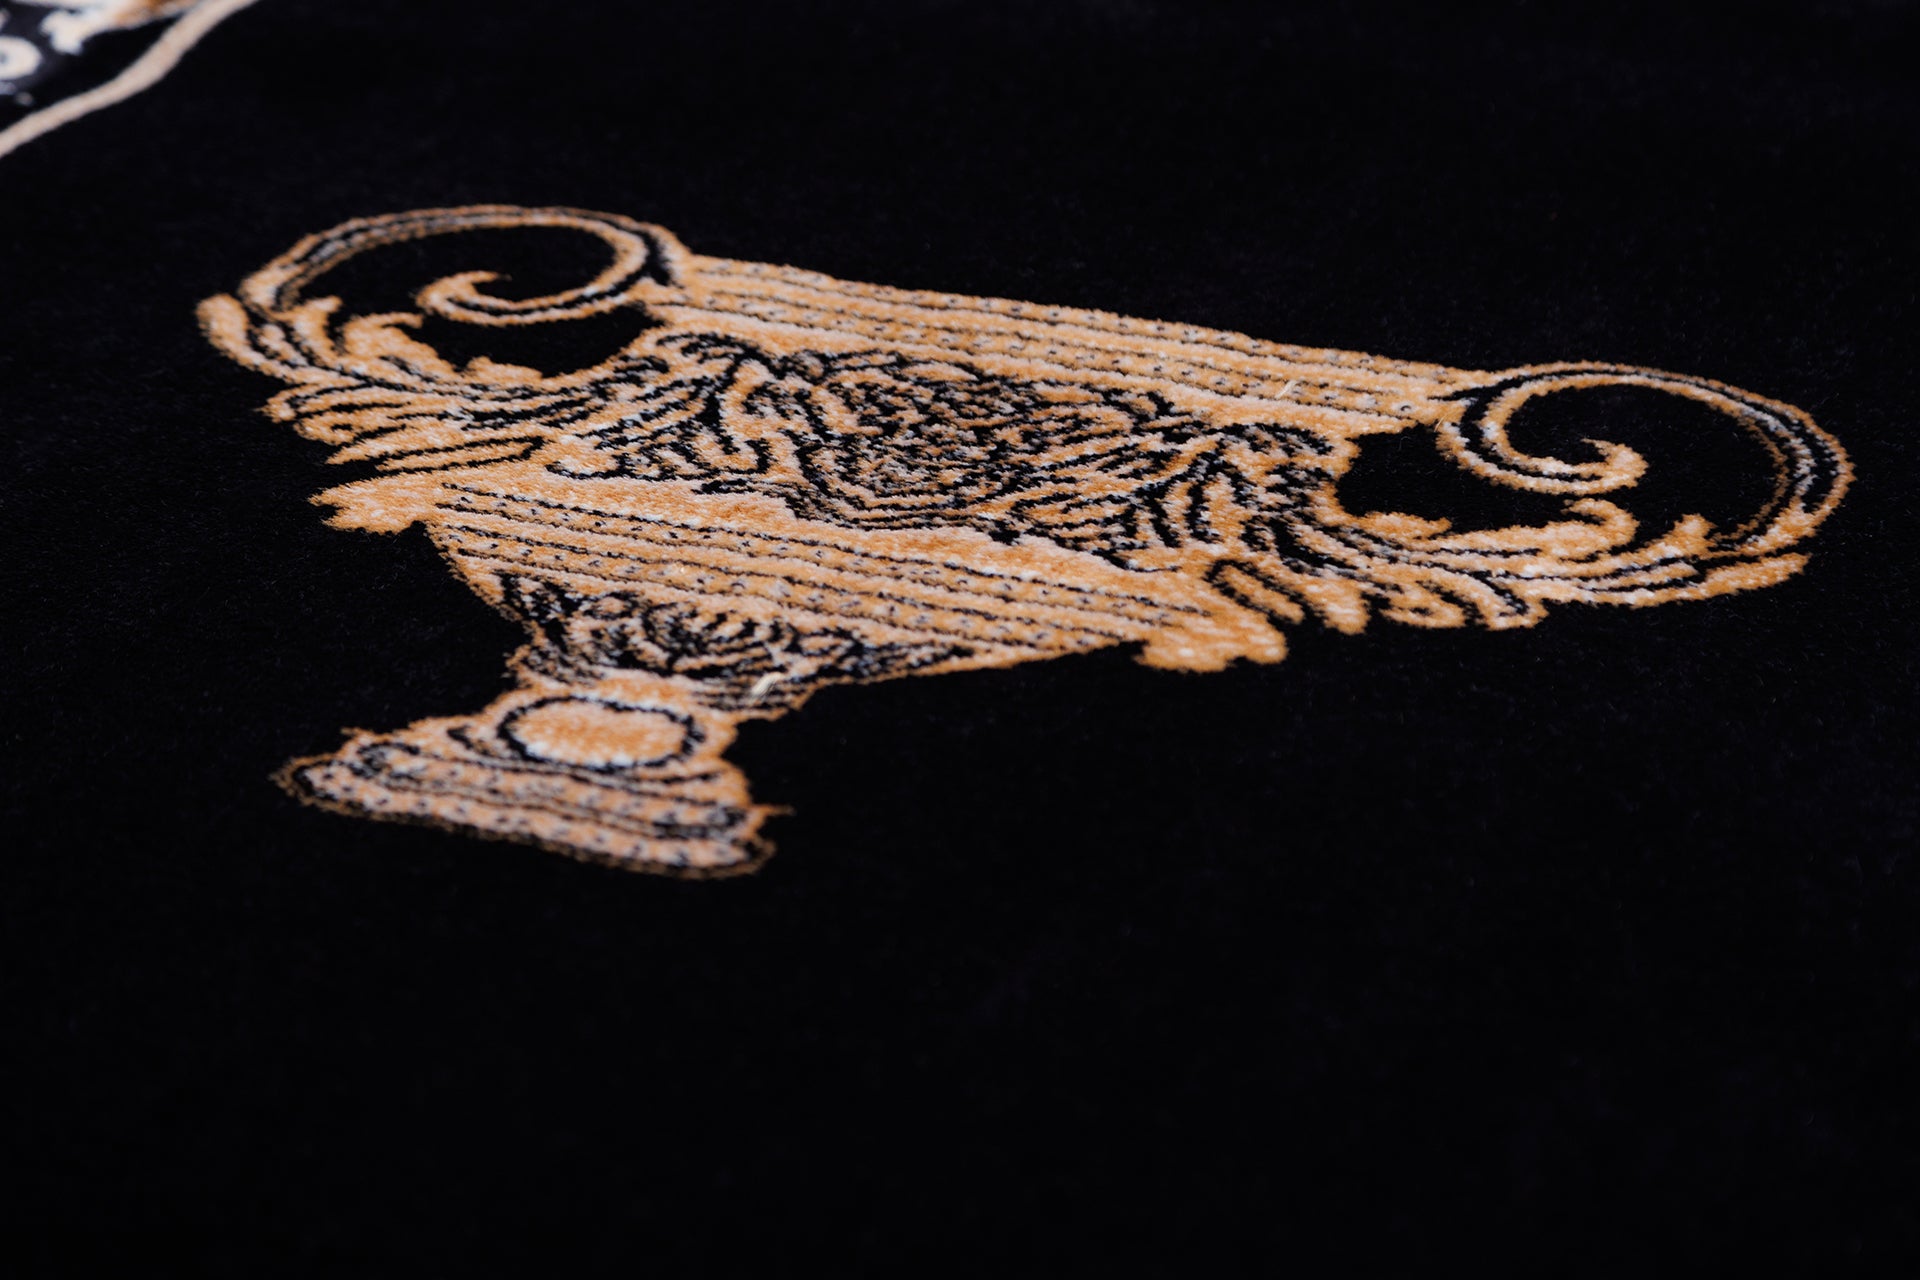 Designer Teppich mit griechischer Amphora in schwarz gold - edel und stillvoll